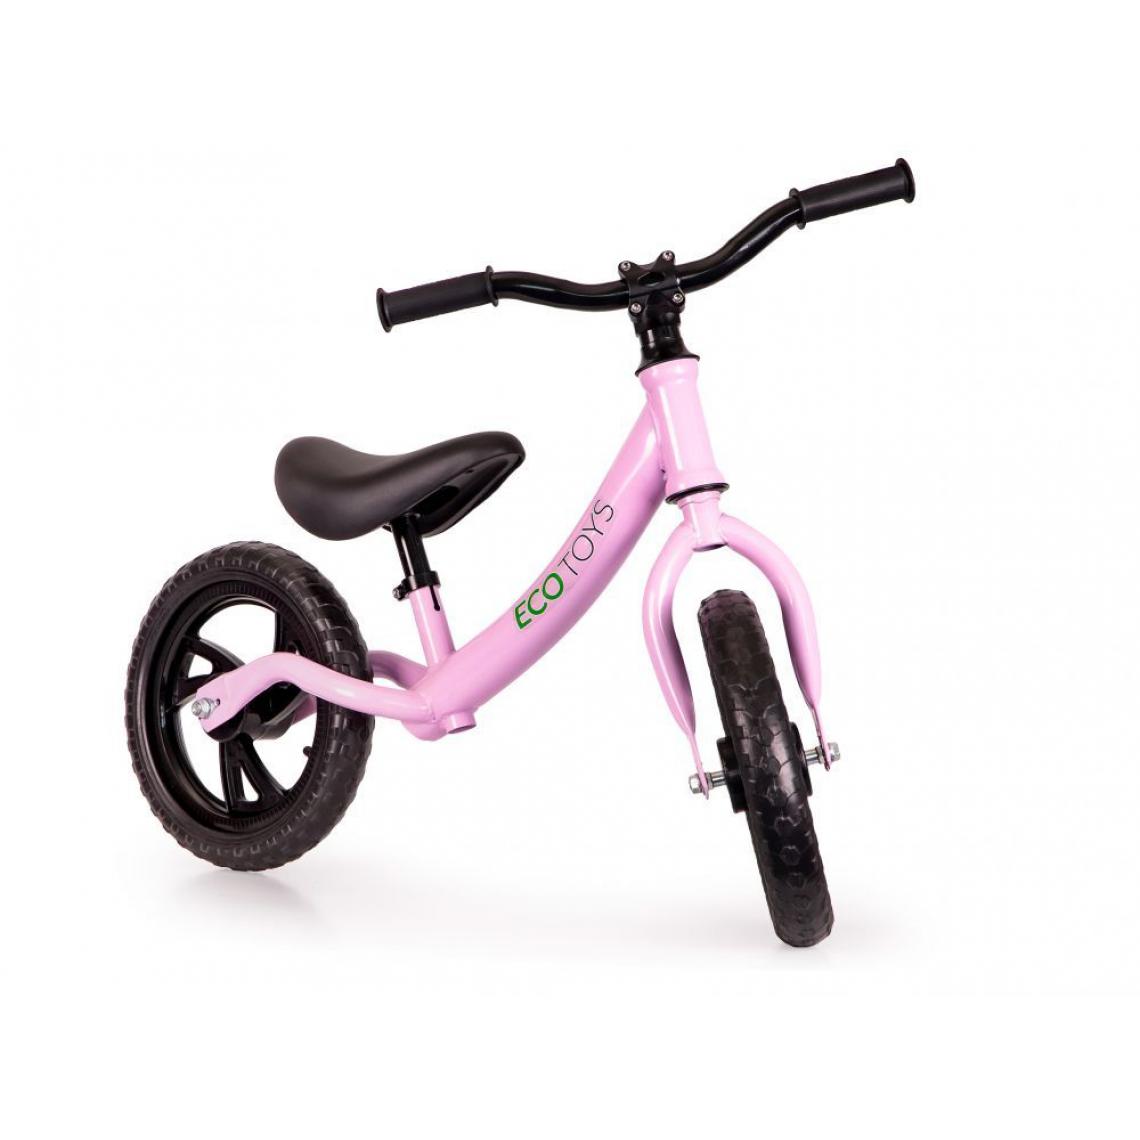 Hucoco - MSTORE | Draisienne vélo trotteur pousseur +18m enfant | Réglage selle et guidon en hauteur | Roues en mousse EVA - Rose - Voitures